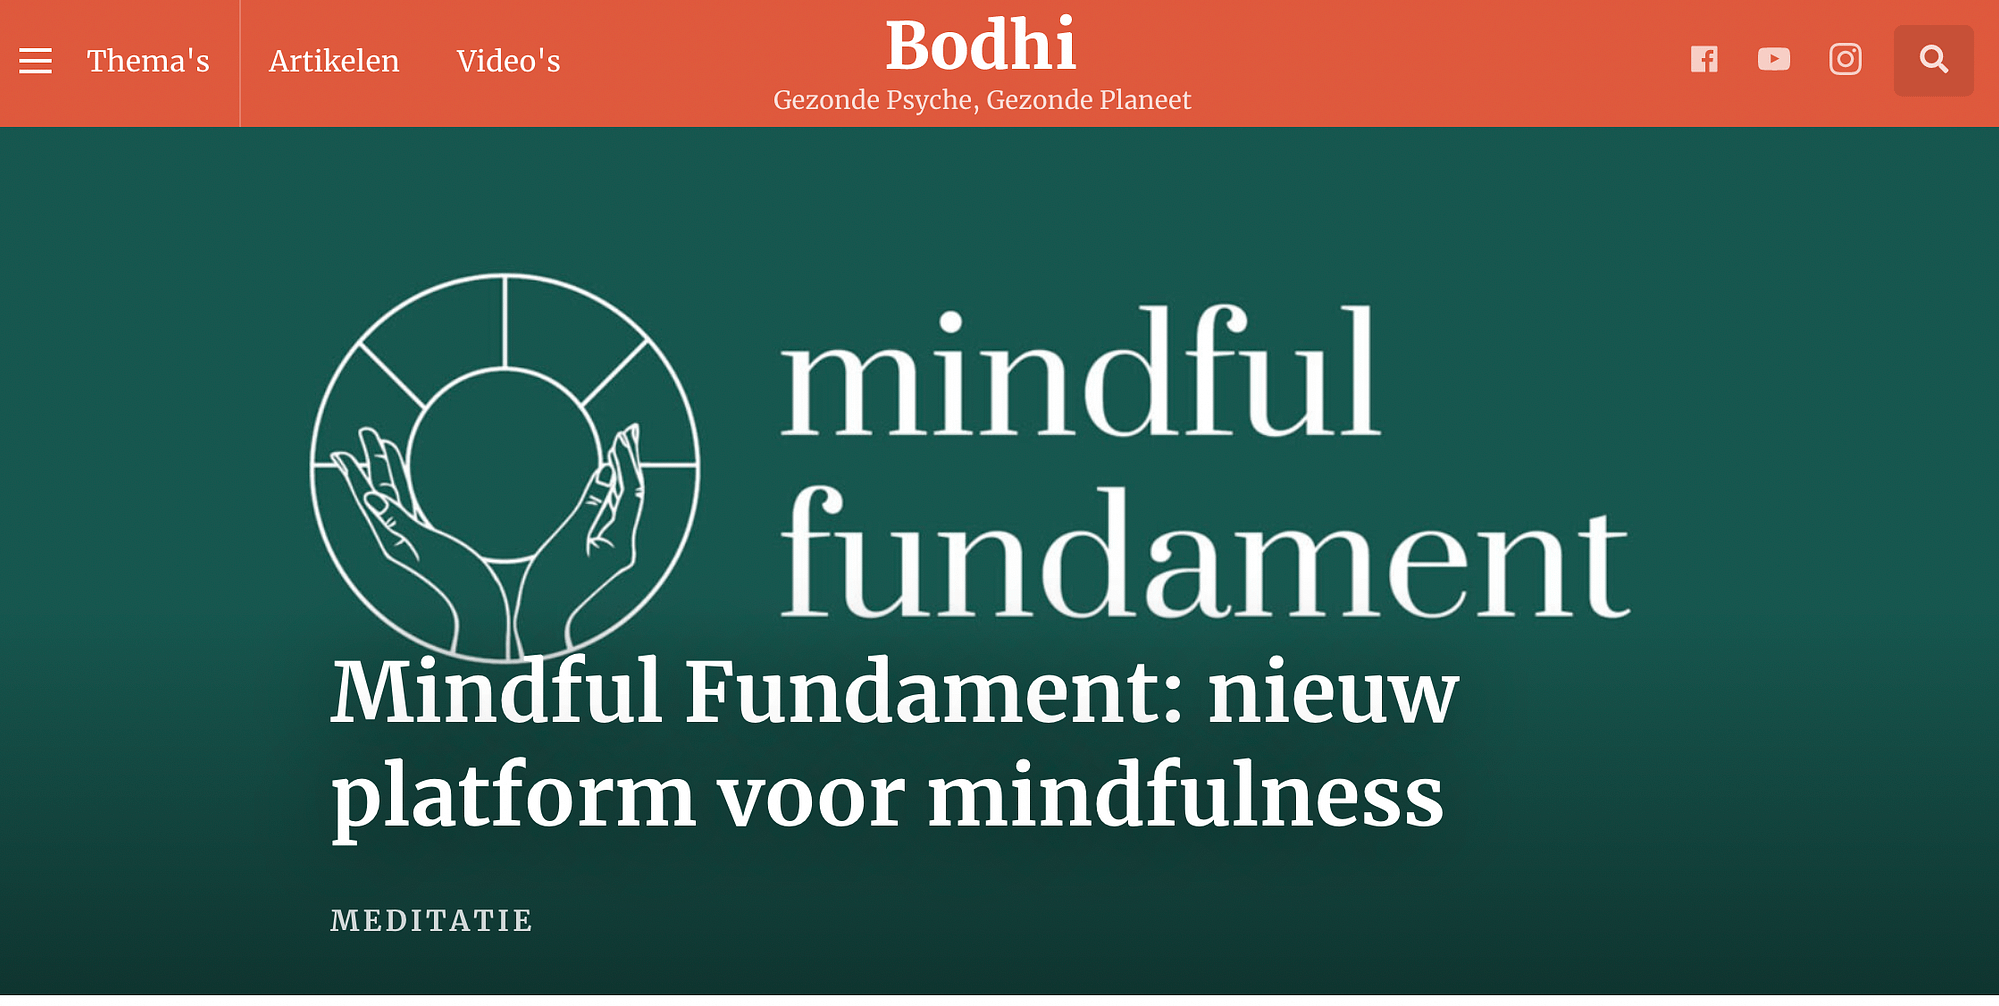 Bodhitv Mindful Fundament